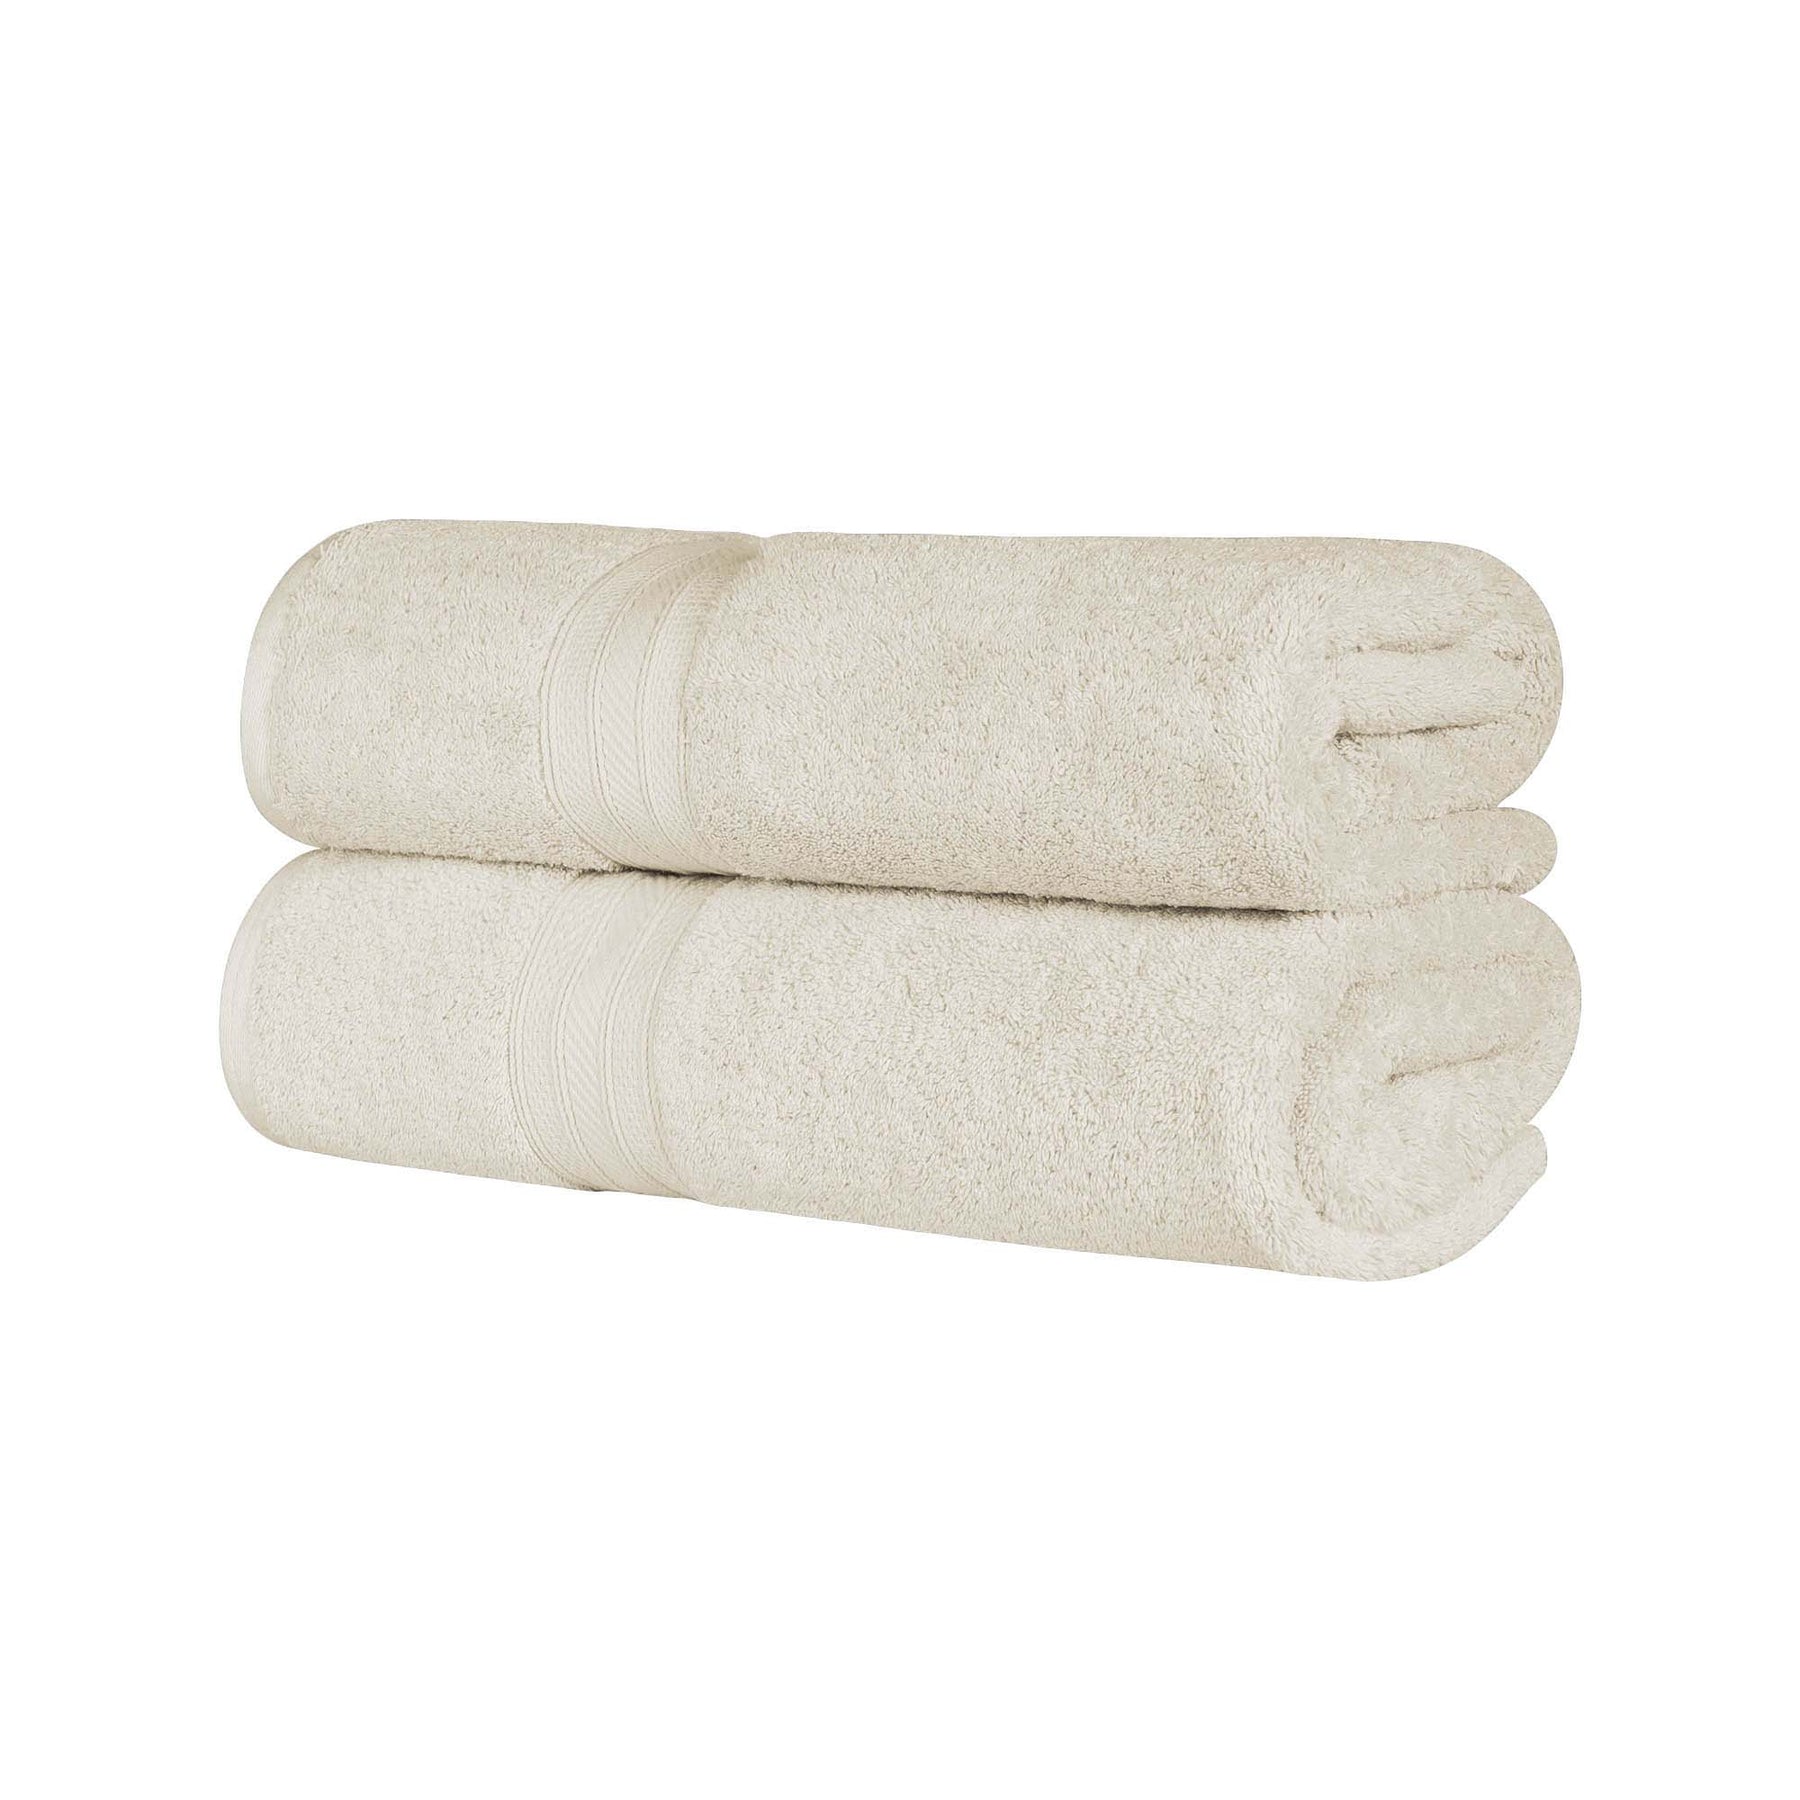 Cotton Heavyweight Absorbent Plush 2 Piece Bath Sheet Set - Almond